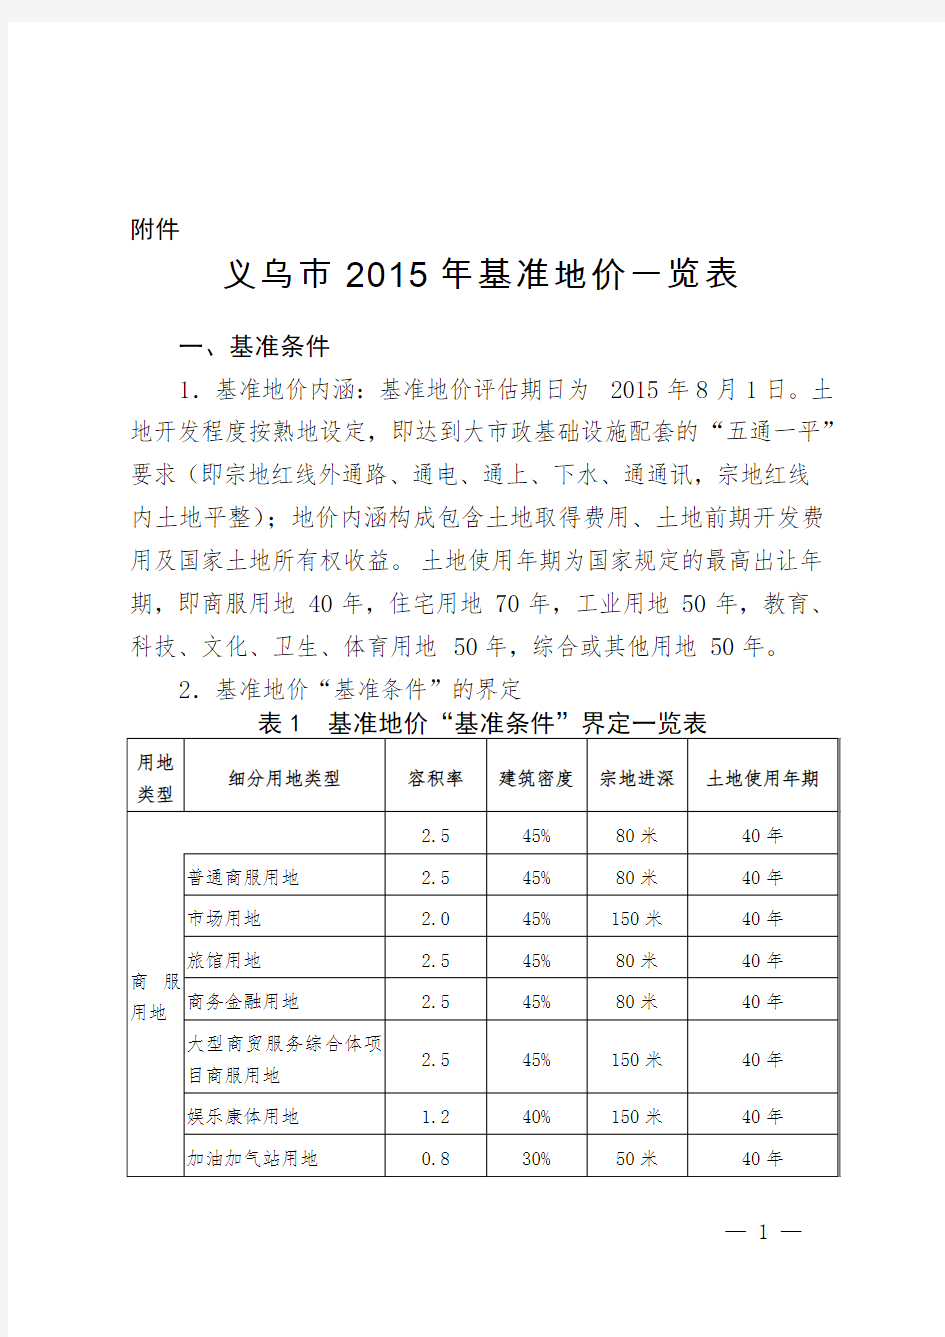 义乌市2015年基准地价一览表-附件